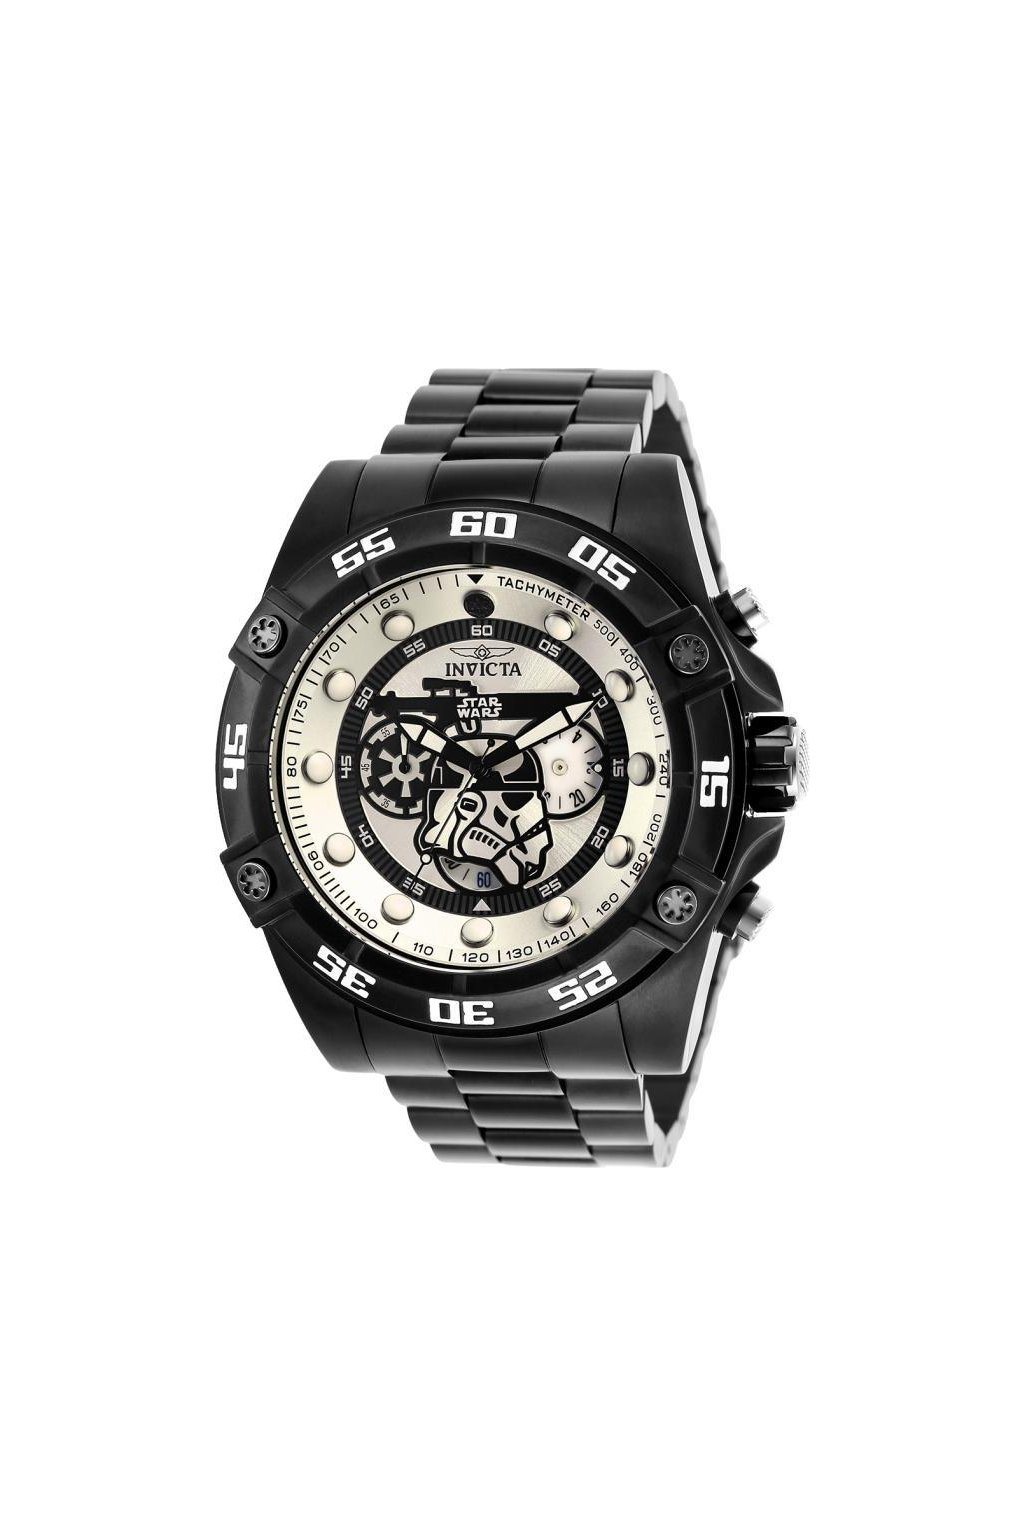 Pánské hodinky Invicta STAR WARS Stormtrooper 26515  + Kufr Invicta v hodnotě 1000 Kč ZDARMA